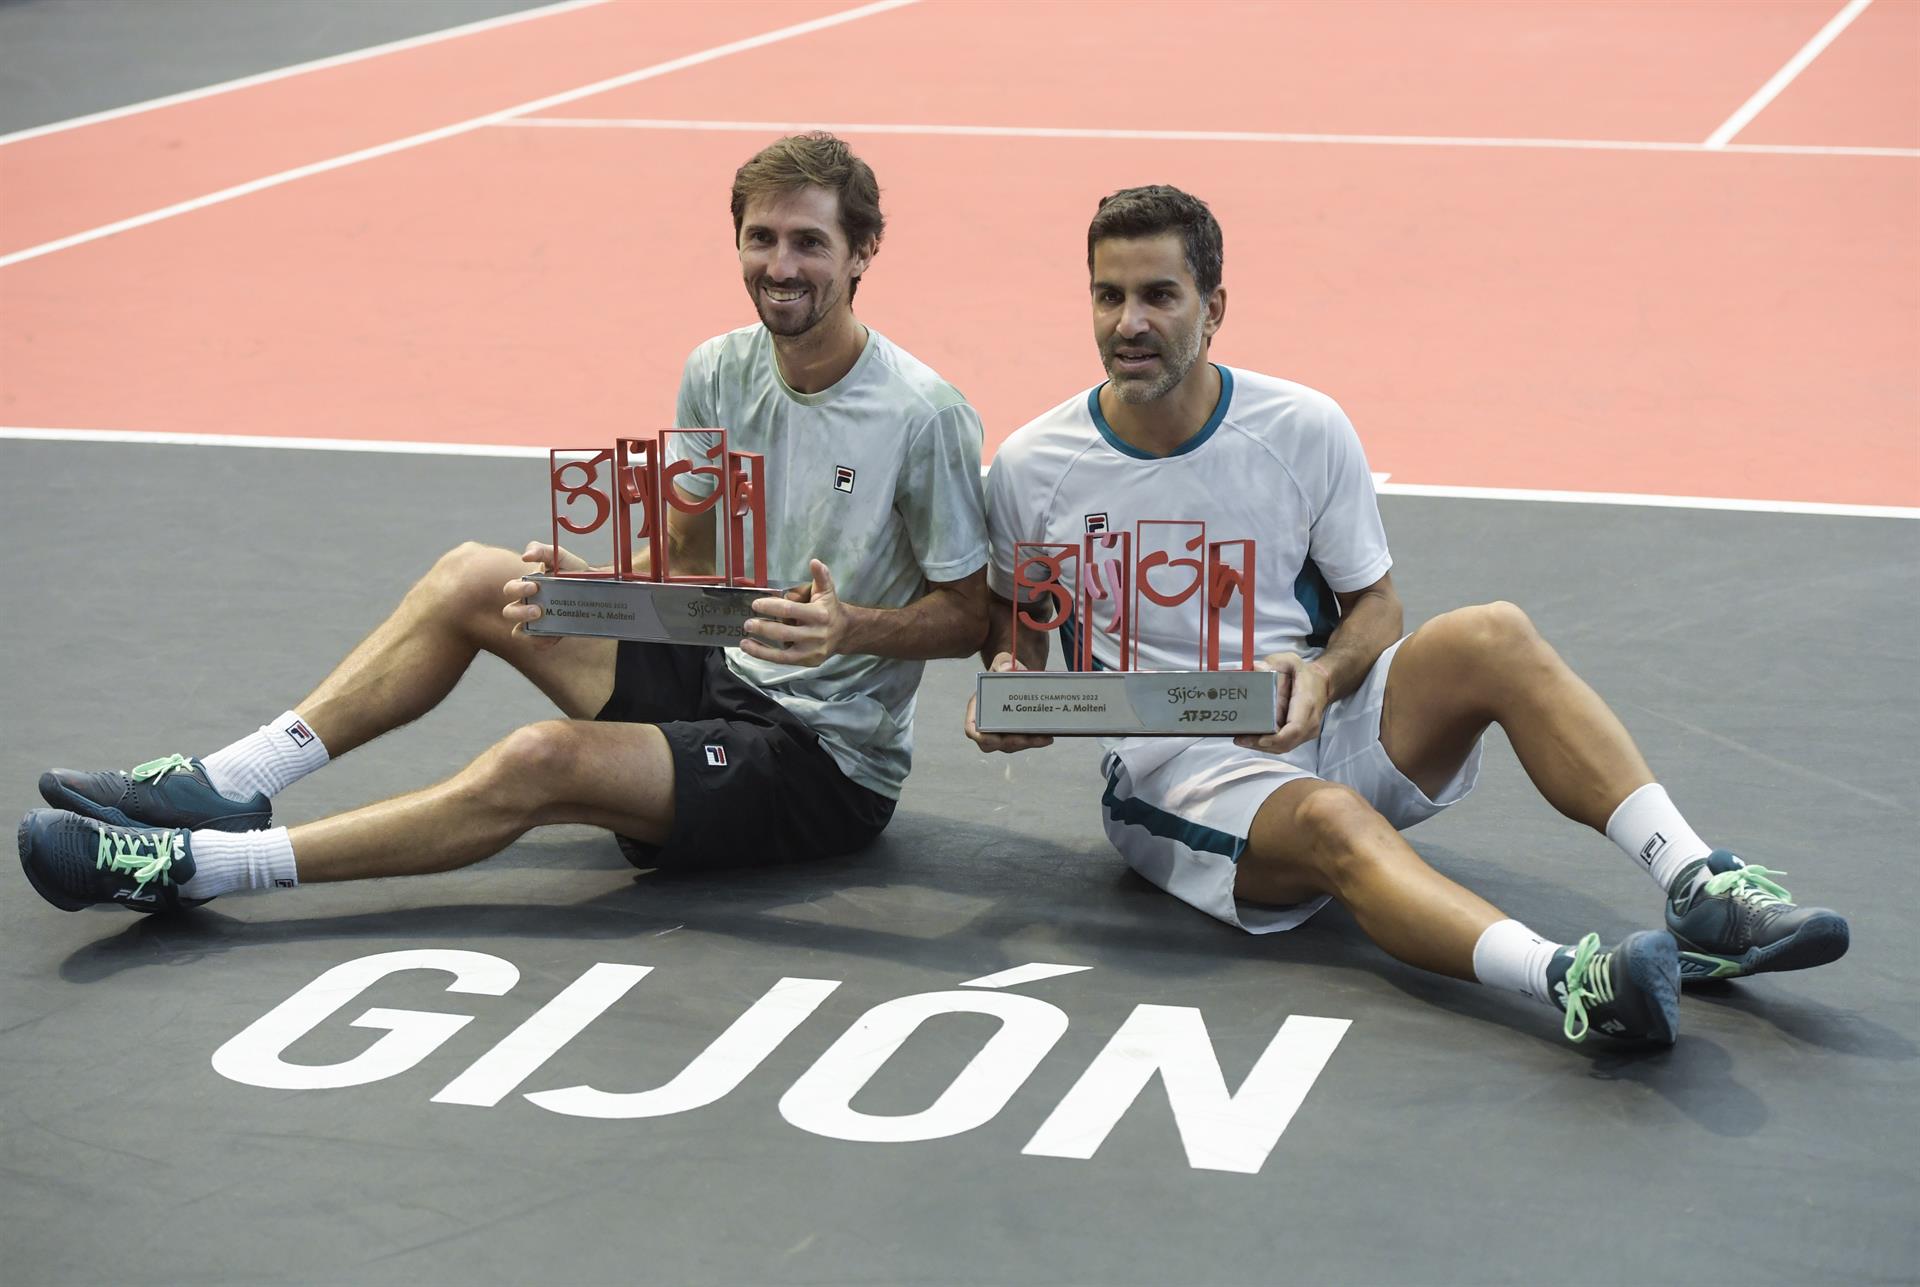 La pareja formada por los argentinos Máximo Gonzalez y Andres Molteni celebran su victoria en la final de dobles del torneo ATP 250 de Gijón en Gijón. EFE/Eloy Alonso